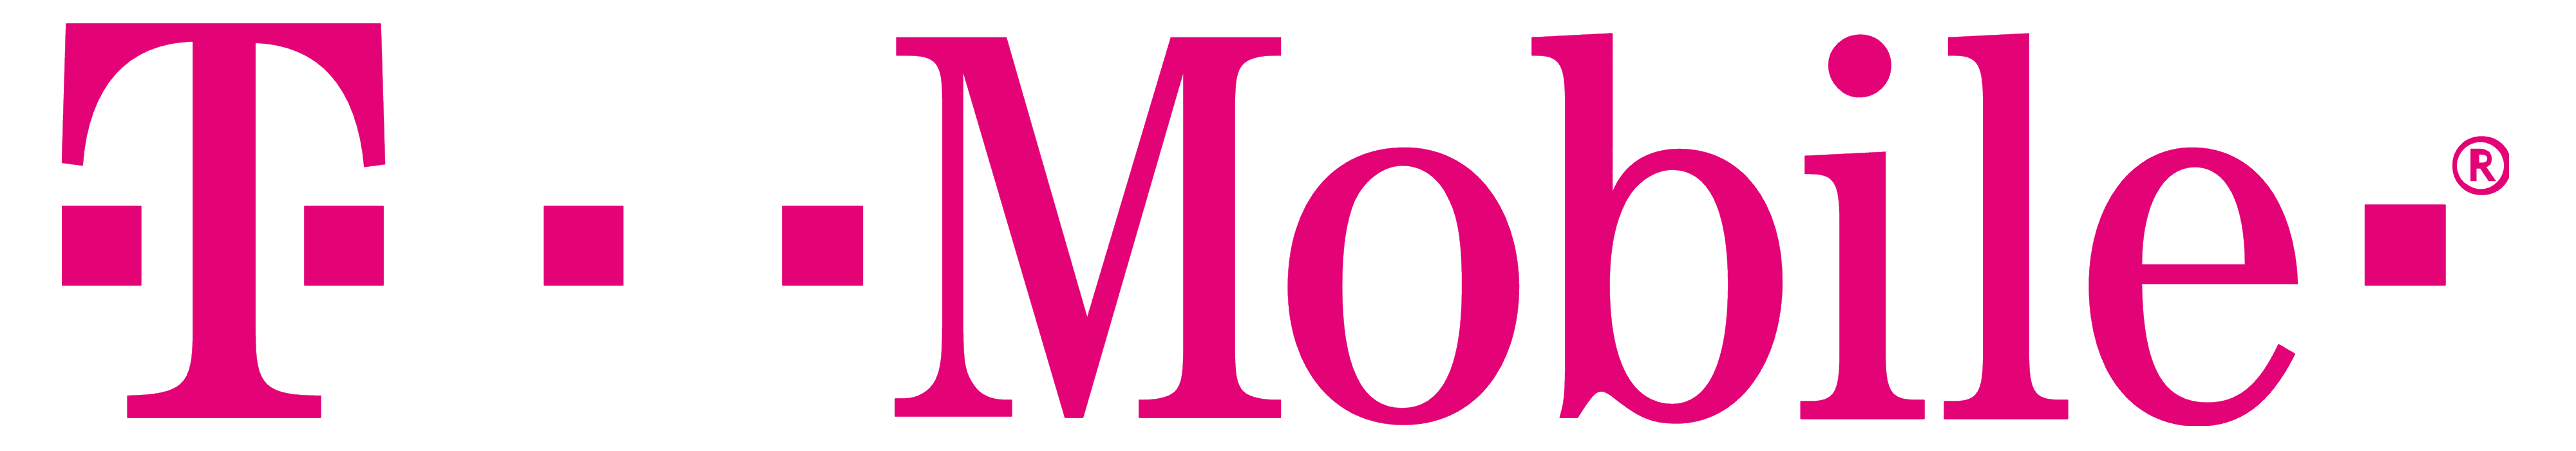 T-Mobile logo, logotype